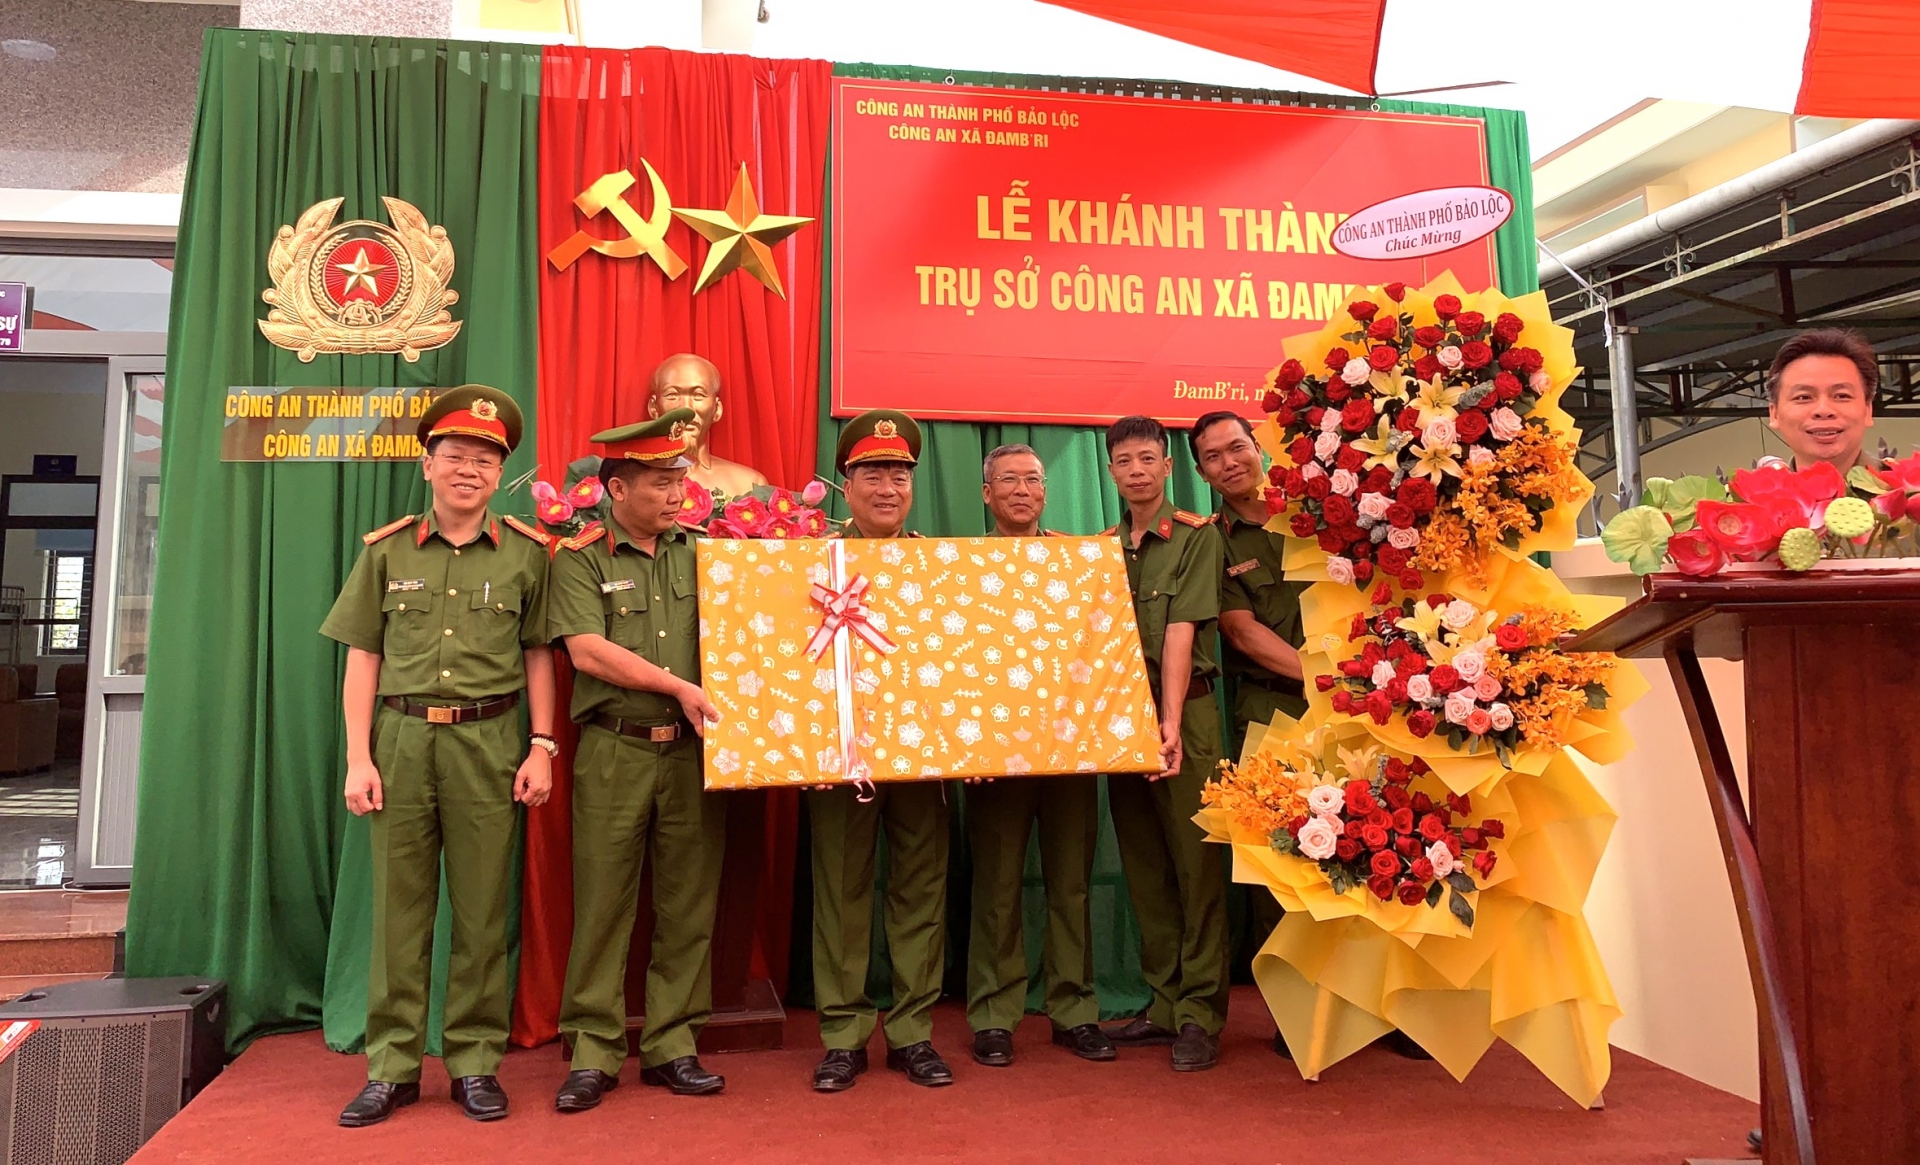 Đại tá Nguyễn Tấn Vũ - Trưởng Công an TP Bảo Lộc tặng quà chúc mừng Công an xã Đam Bri